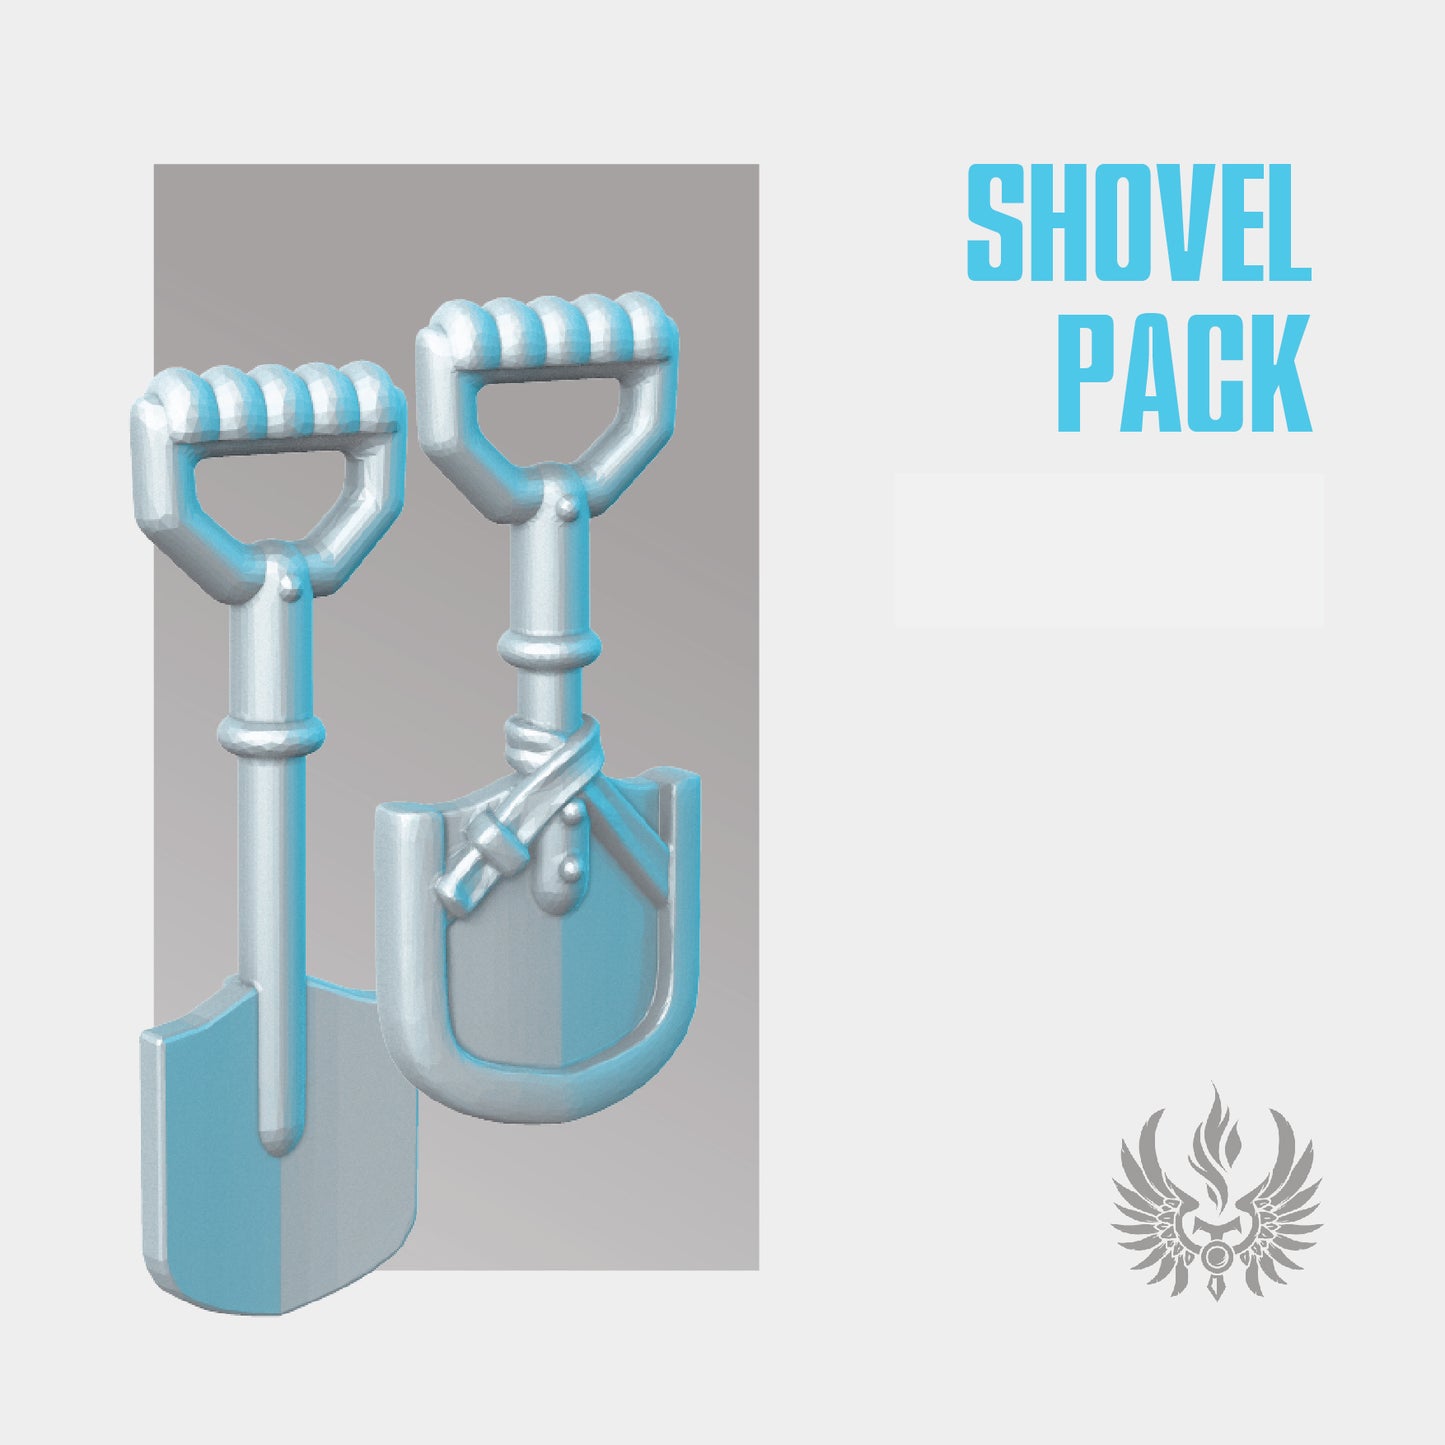 Shovel pack STL